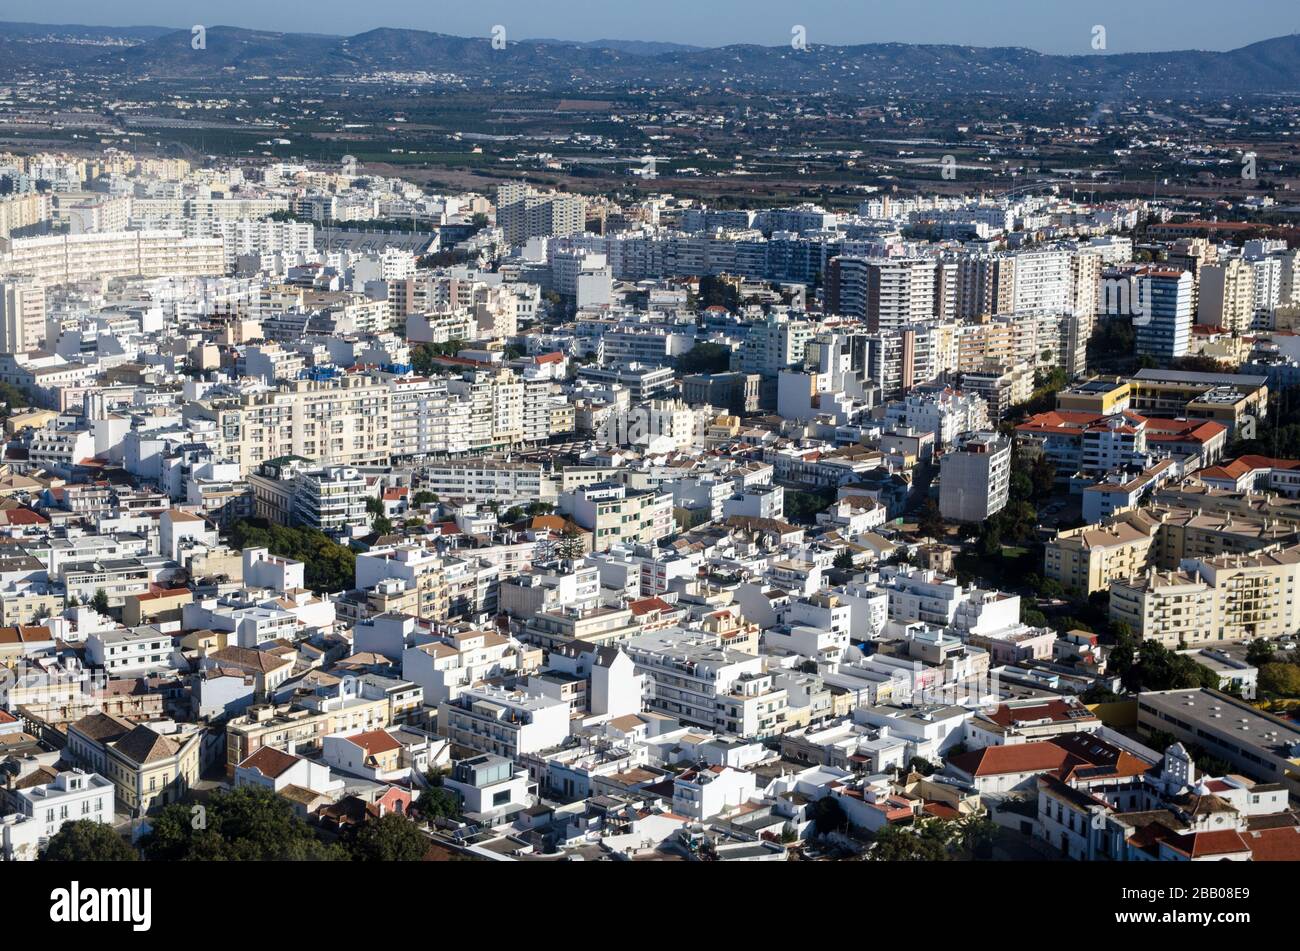 Vue aérienne de la ville de Faro sur la côte de l'Algarve au Portugal. Une partie du Sporting Club Farense peut être vue vers le haut. Banque D'Images